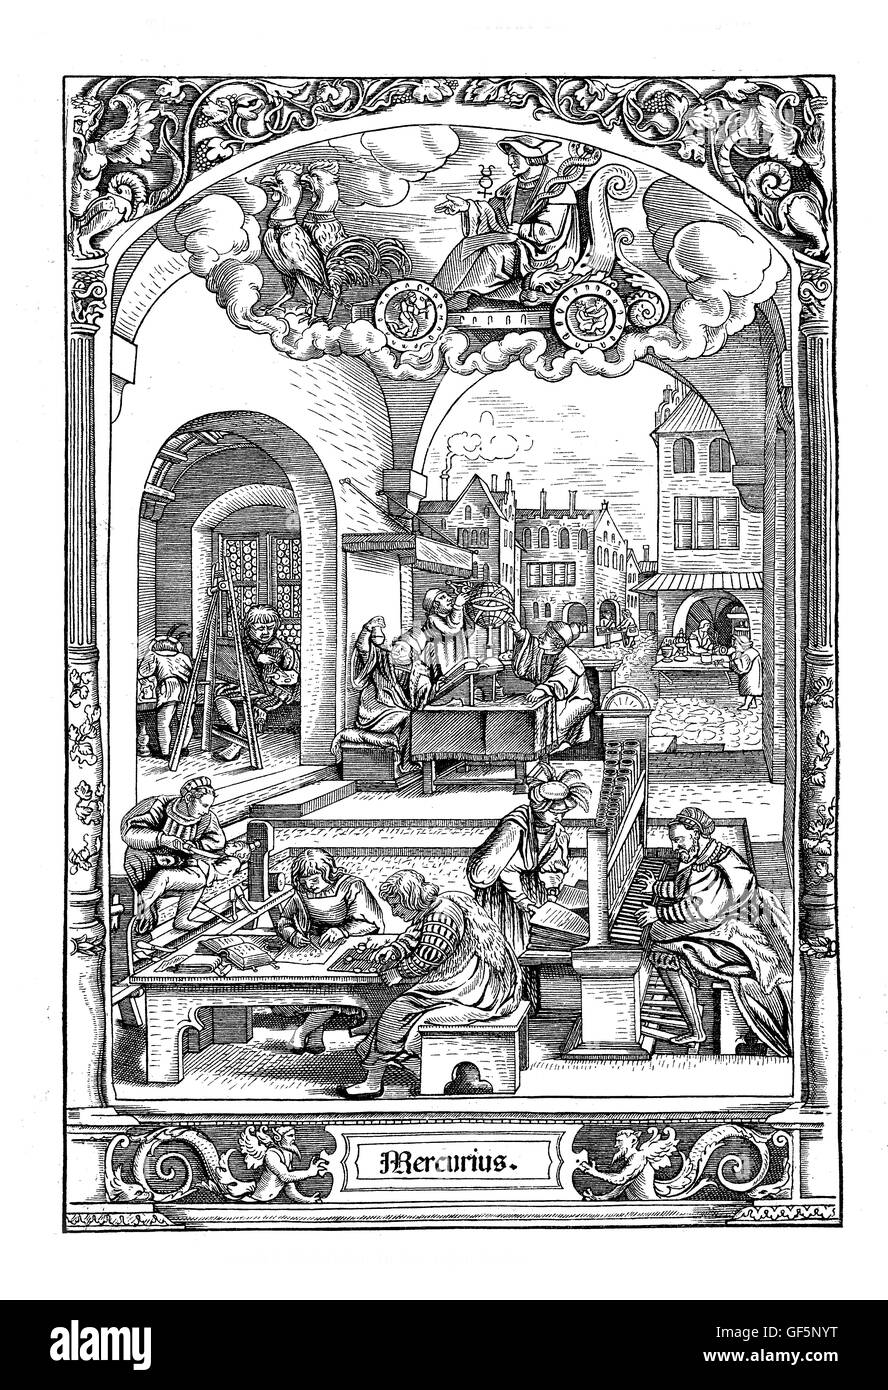 Holzschnitt von Hans Sebald Beham (1500-1550), aus "Die Abfolgen von den Wochentagen": unter dem astrologisch Zeichen des Merkur eine Reihe von Szenen aus dem städtischen Leben in jenen Tagen (Mittwoch). Obwohl Mord alles andere als unbekannt in jenen Zeiten war, ist der Mann mit dem Messer auf der linken Seite angeblich einen Arzt, kein professioneller Killer. Stockfoto